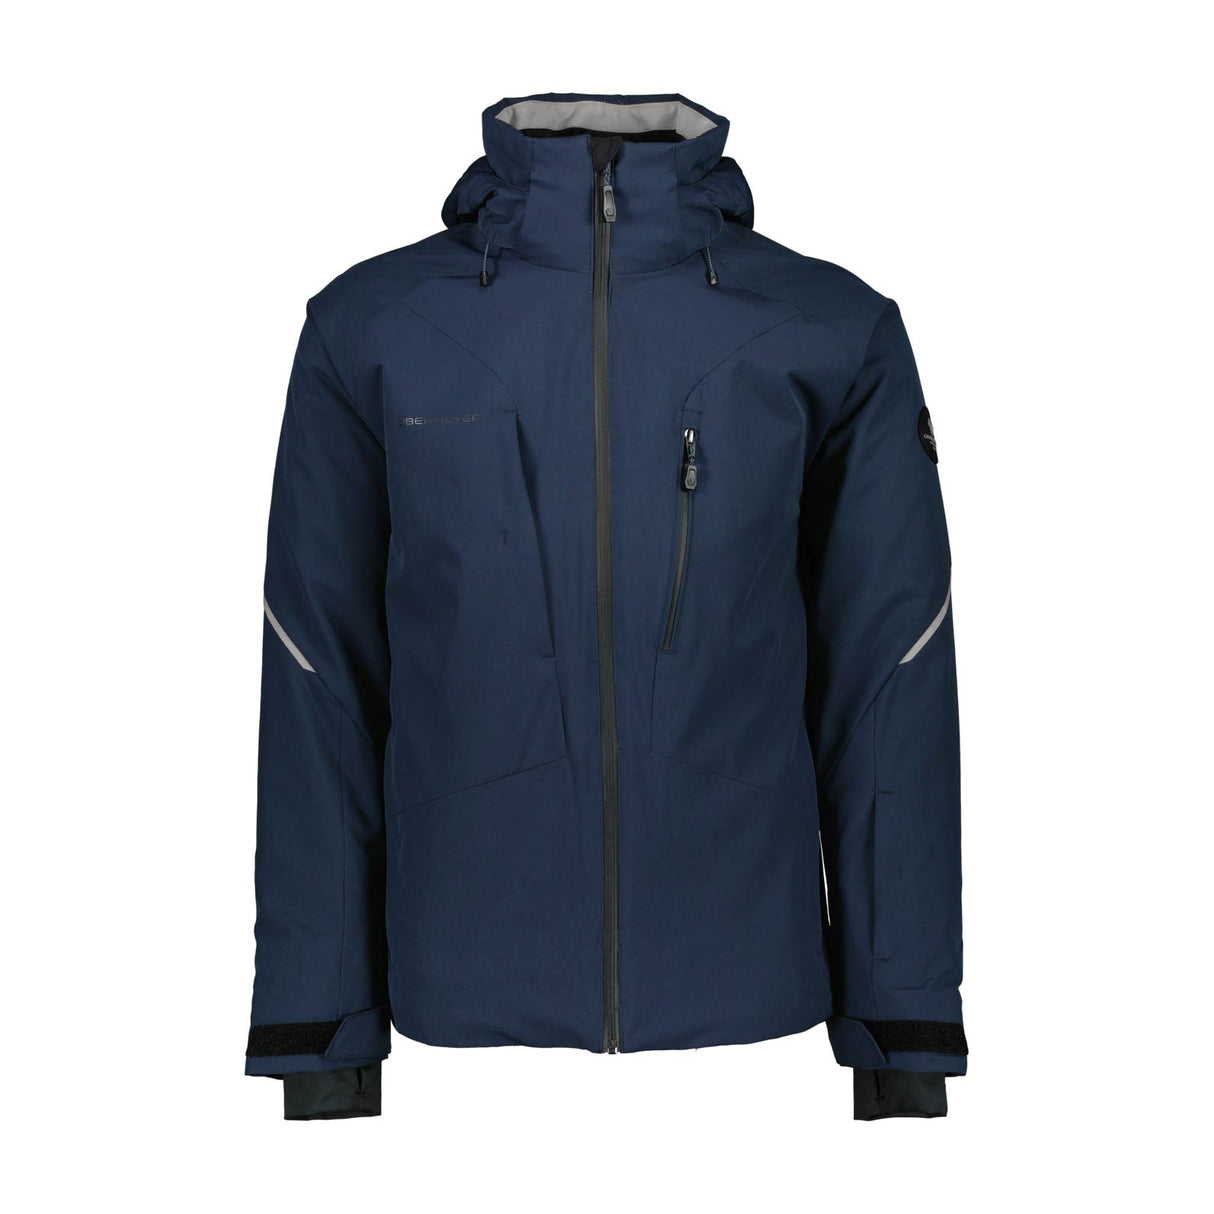 Obermeyer Raze ski jacket for men in fleet navy - front view